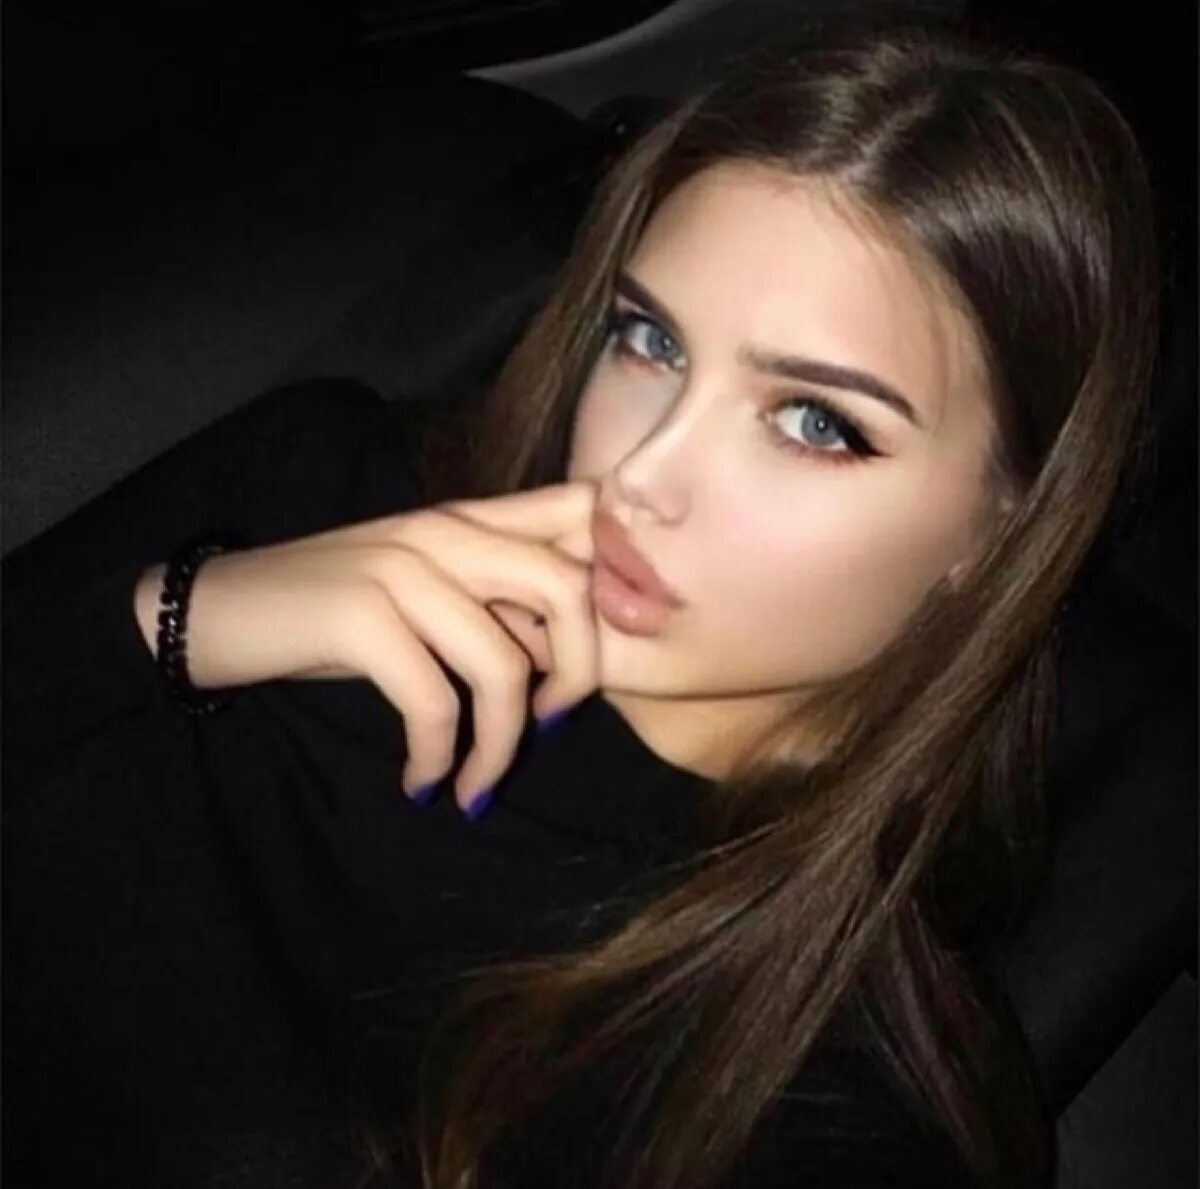 Мари Григорян. Девушка 20 лет. Красивая 20 летняя девушка